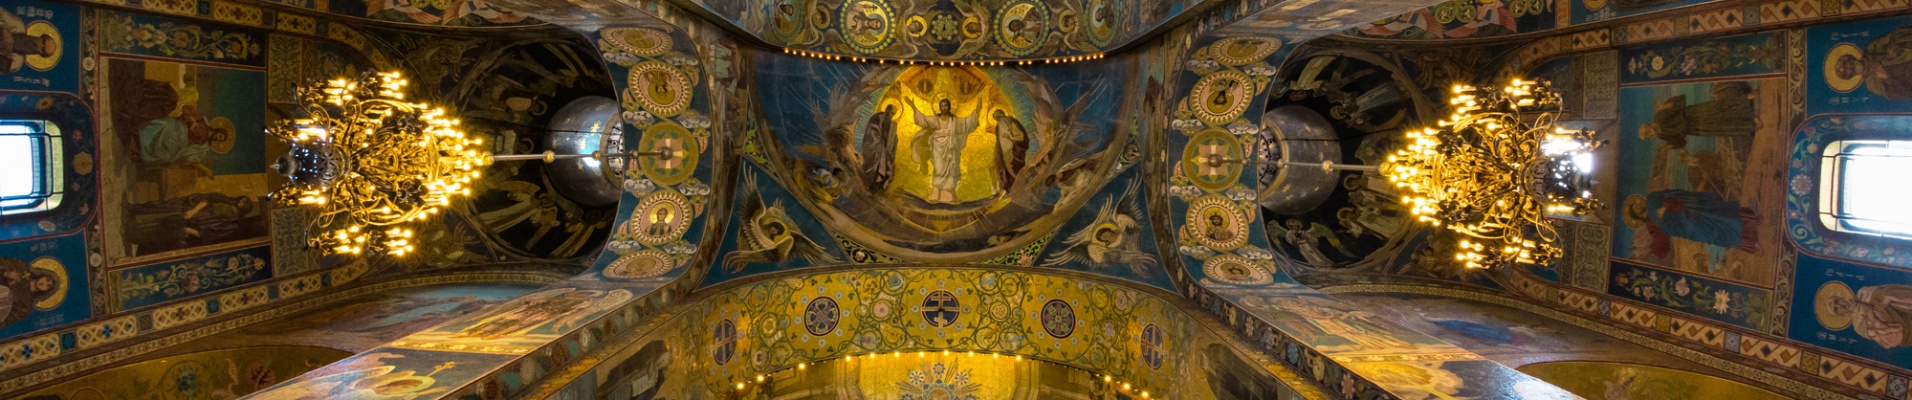 Intérieur d'une cathédrale russe